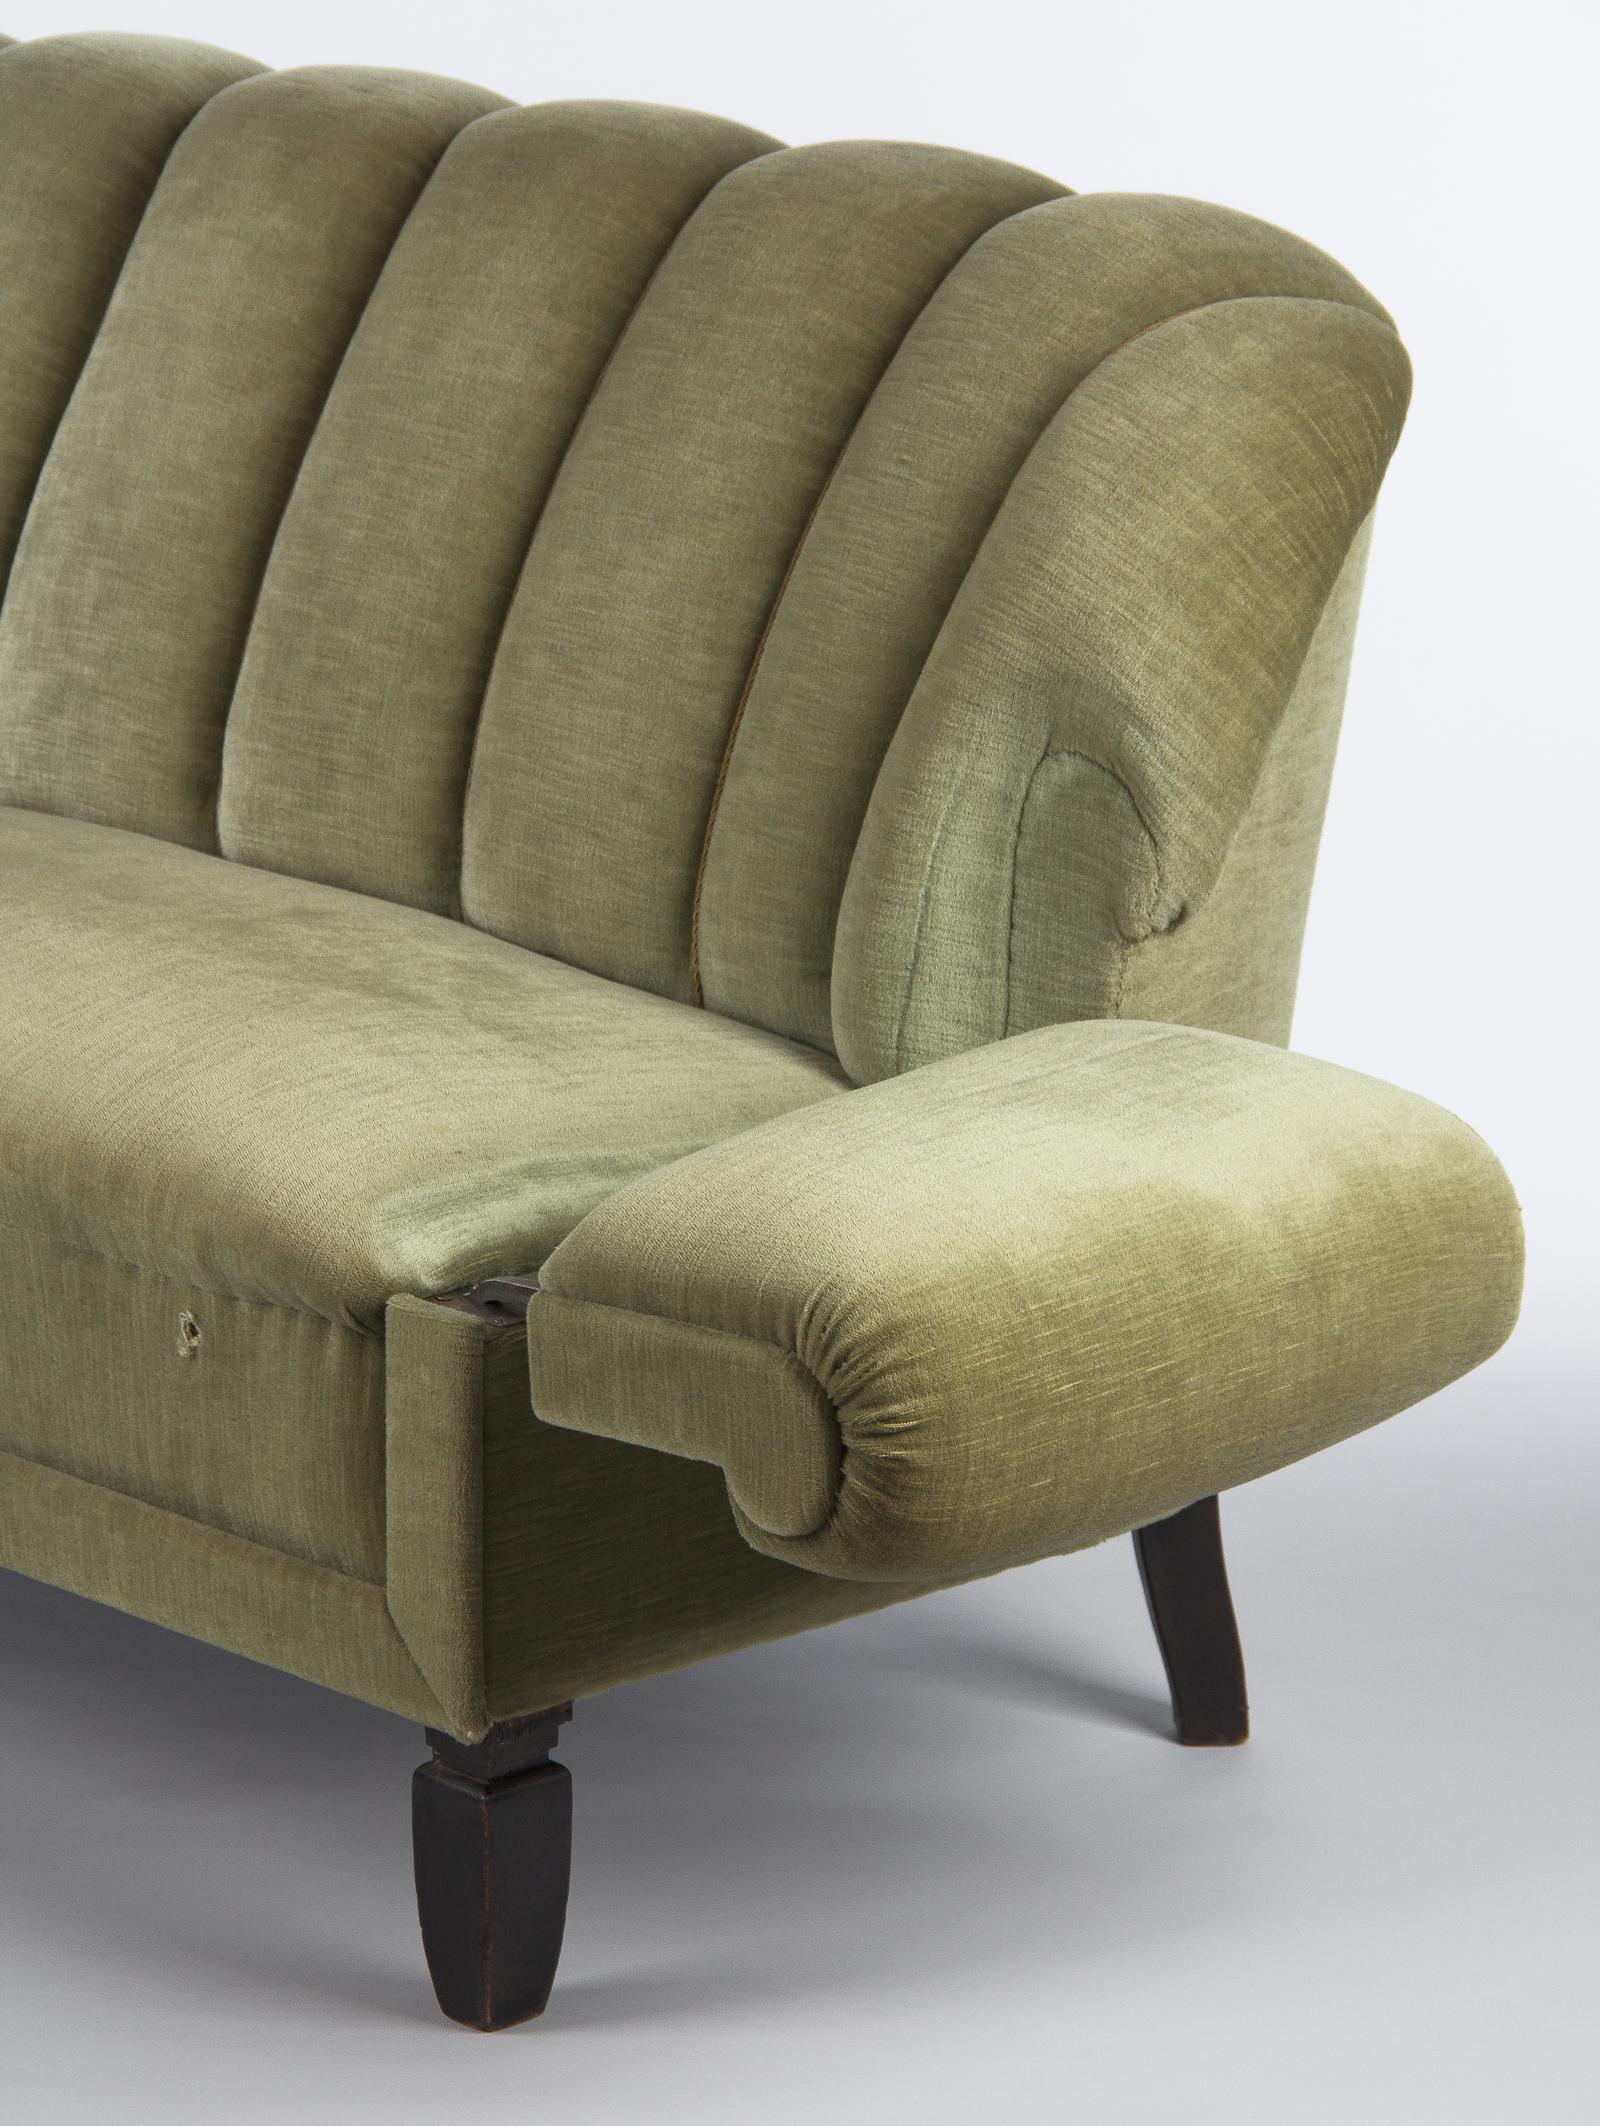 1940's sofa styles